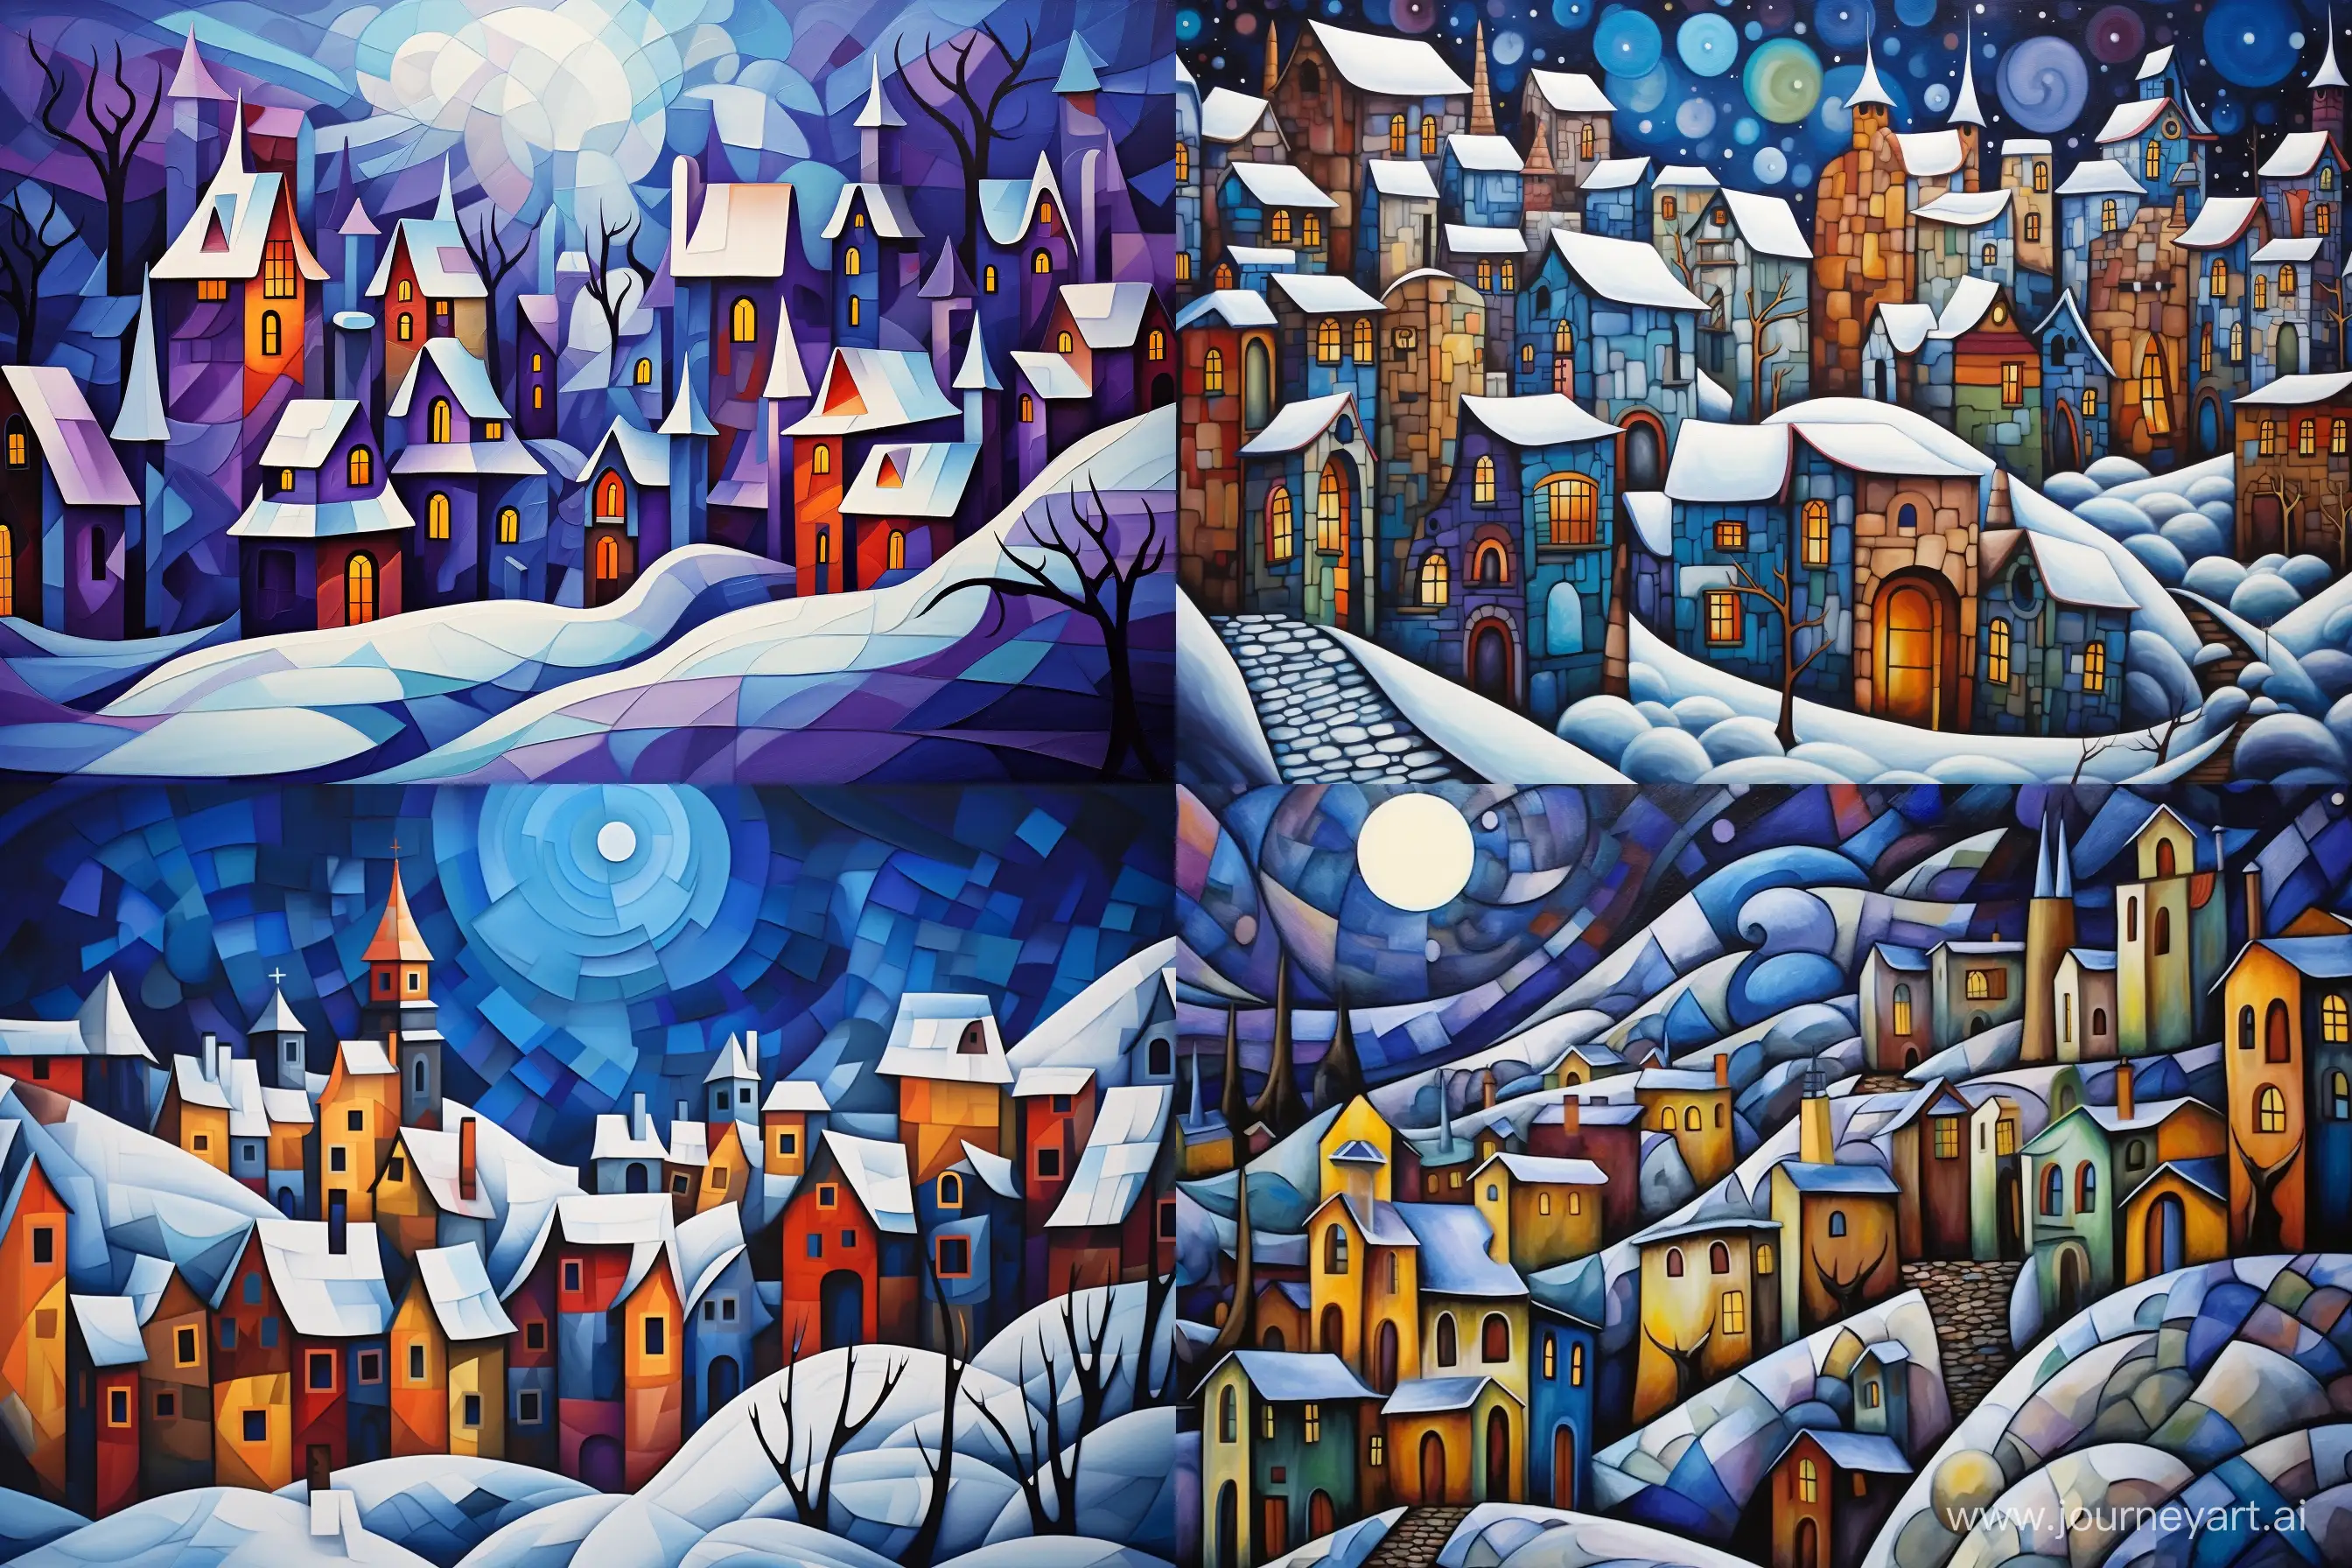 Snowy-Village-Cubism-Art-with-52-Variations-Unique-32-Aspect-Ratio